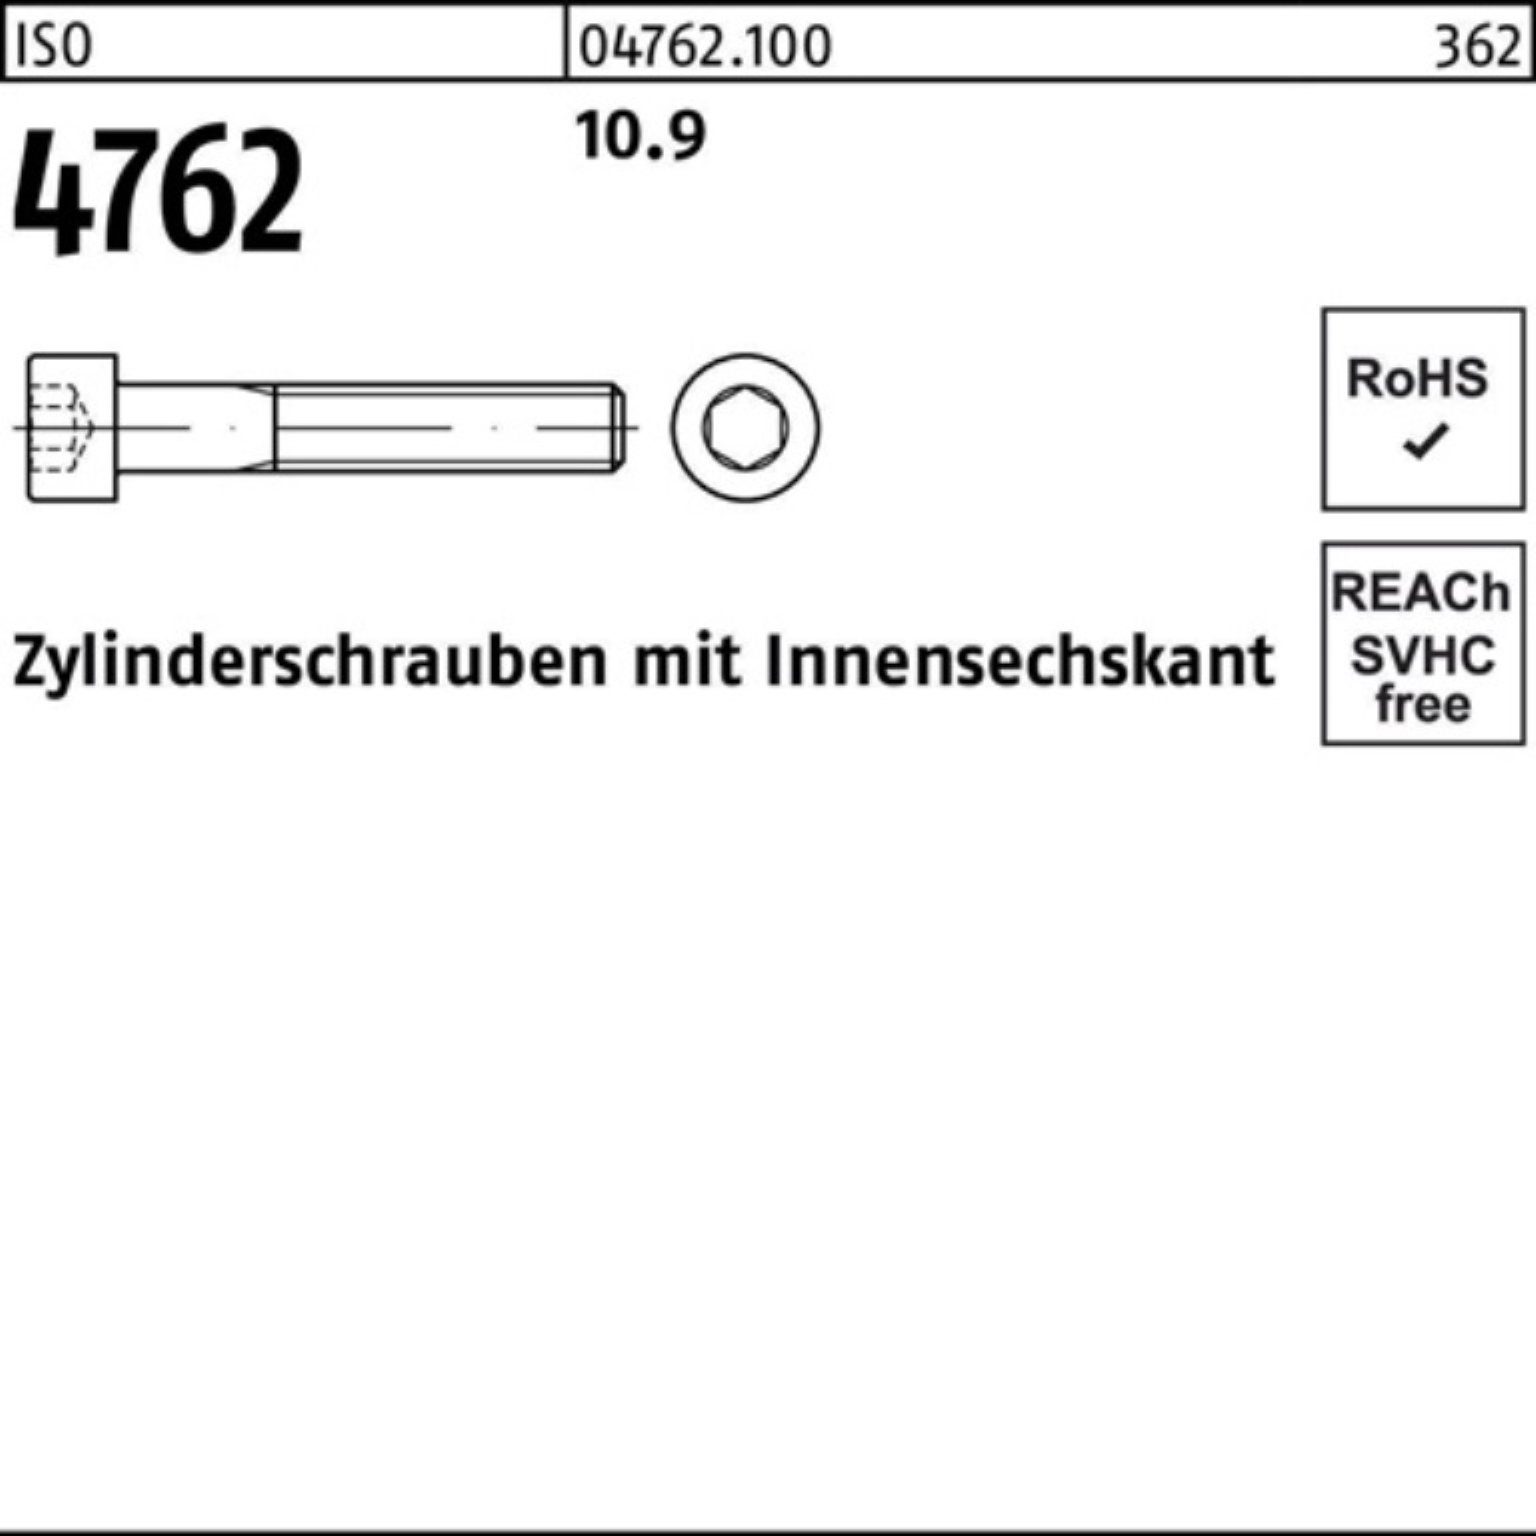 Reyher Zylinderschraube Stück Pack ISO Zylinderschraube Innen-6kt 100er 10.9 M12x 50 4762 110